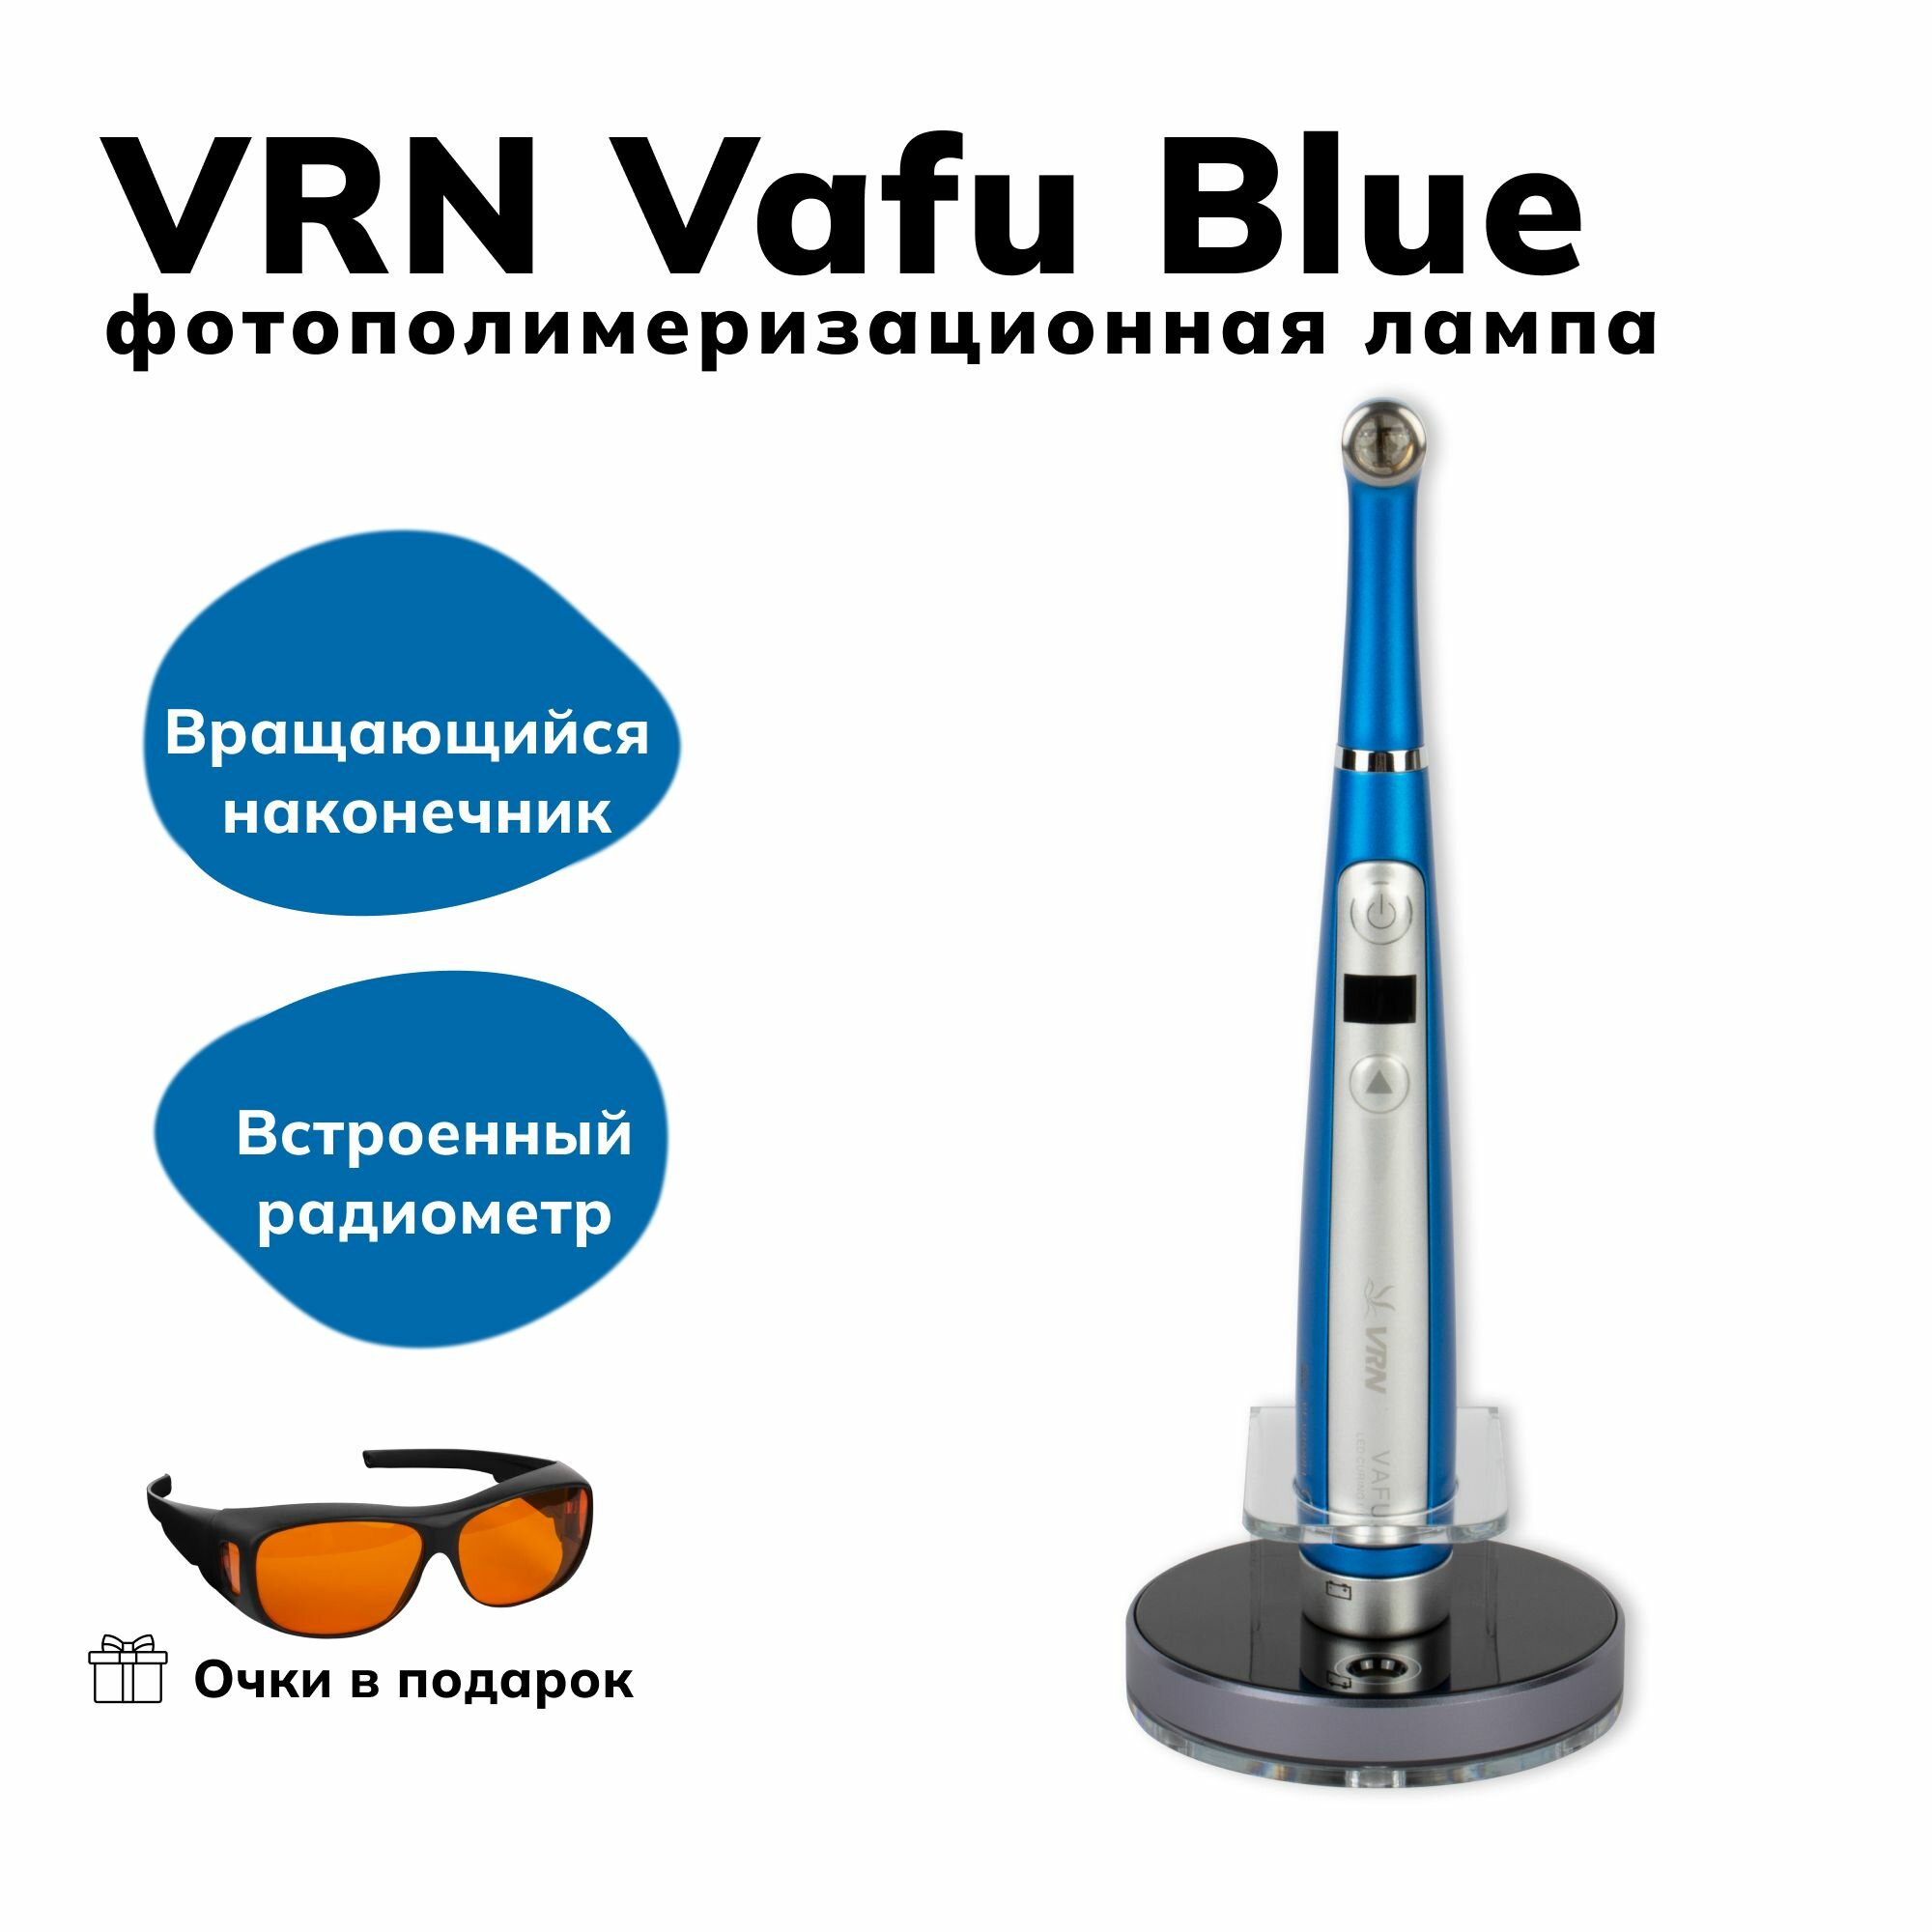 VRN Vafu Blue - беспроводная фотополимеризационная лампа повышенной мощности с кариес-детектором Guilin Veirun Medical Technology